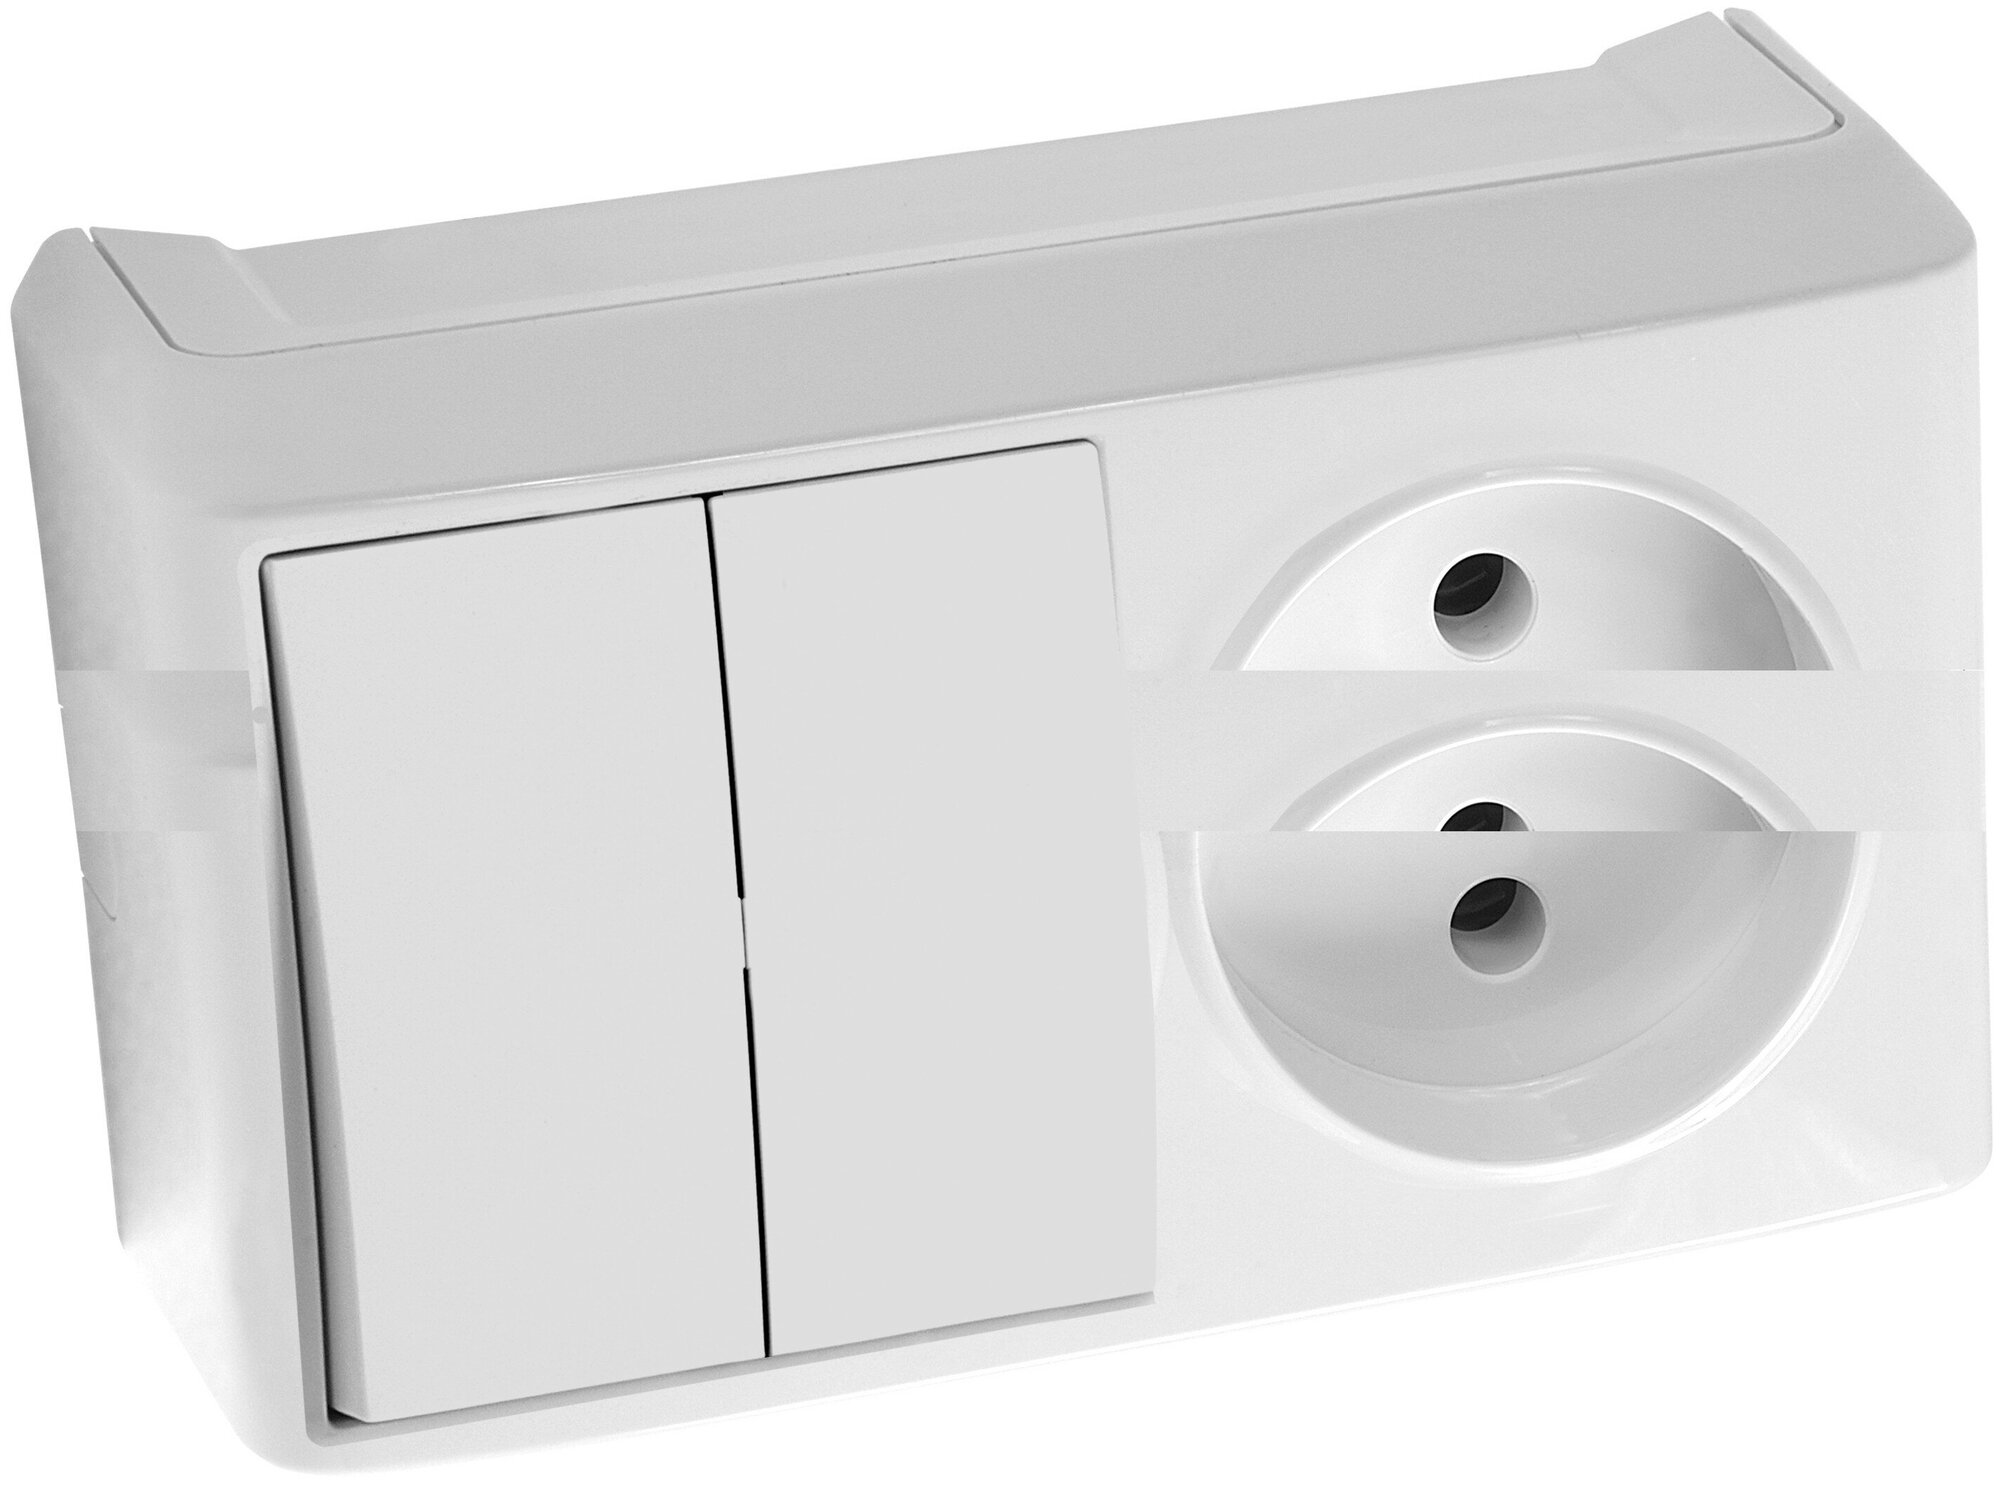 Блок комбинированный Viko двойной выключатель с розеткой белый накладной 90681189